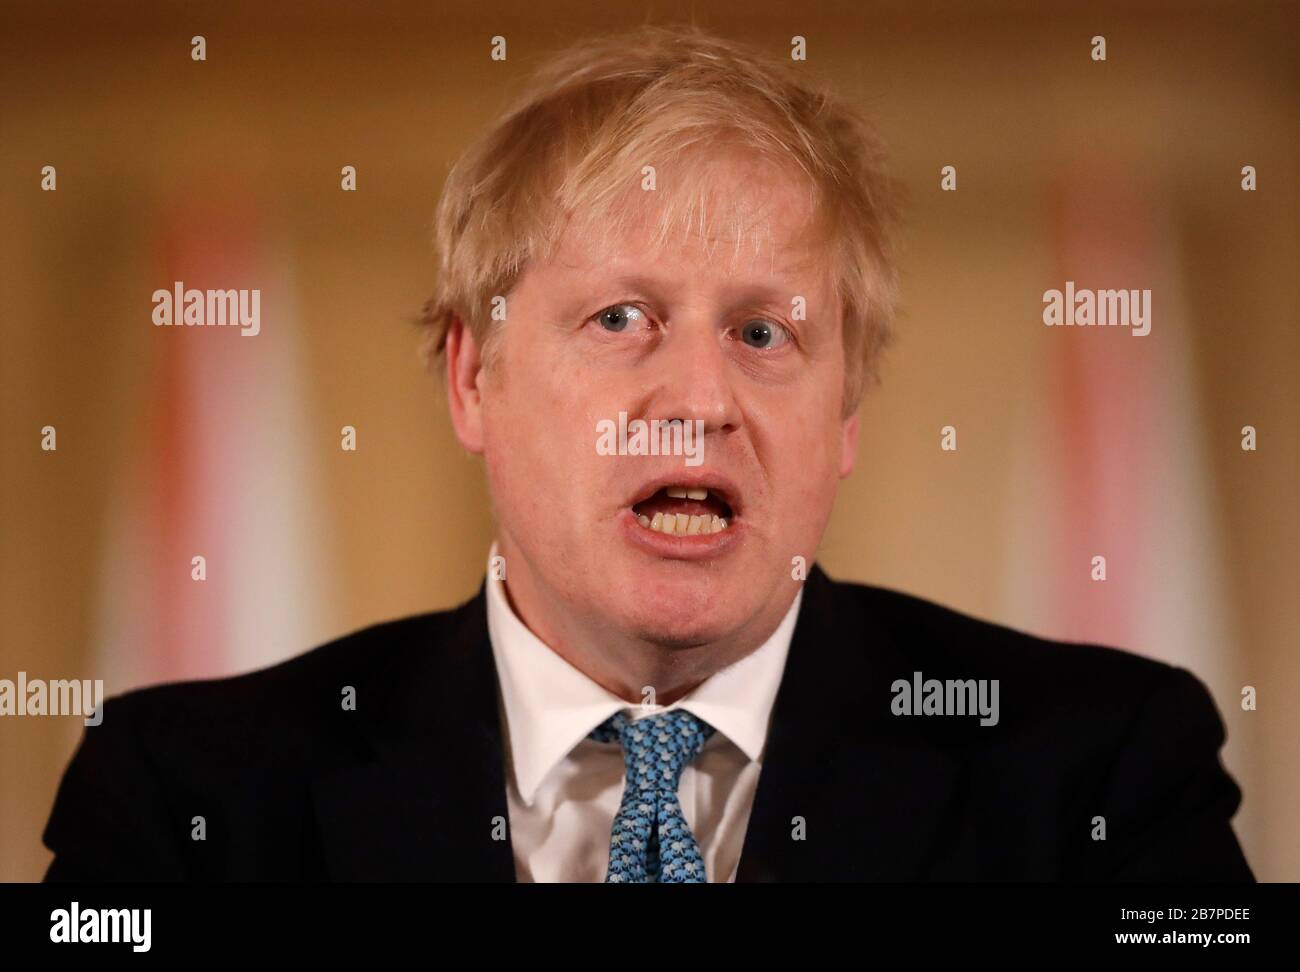 Le Premier ministre Boris Johnson lors d'un exposé médiatique à Downing Street, Londres, sur Coronavirus (COVID-19). Date de l'image: Mardi 17 mars 2020. Voir l'histoire de PA SANTÉ Coronavirus. Crédit photo devrait lire: Matt Dunham/PA fil Banque D'Images